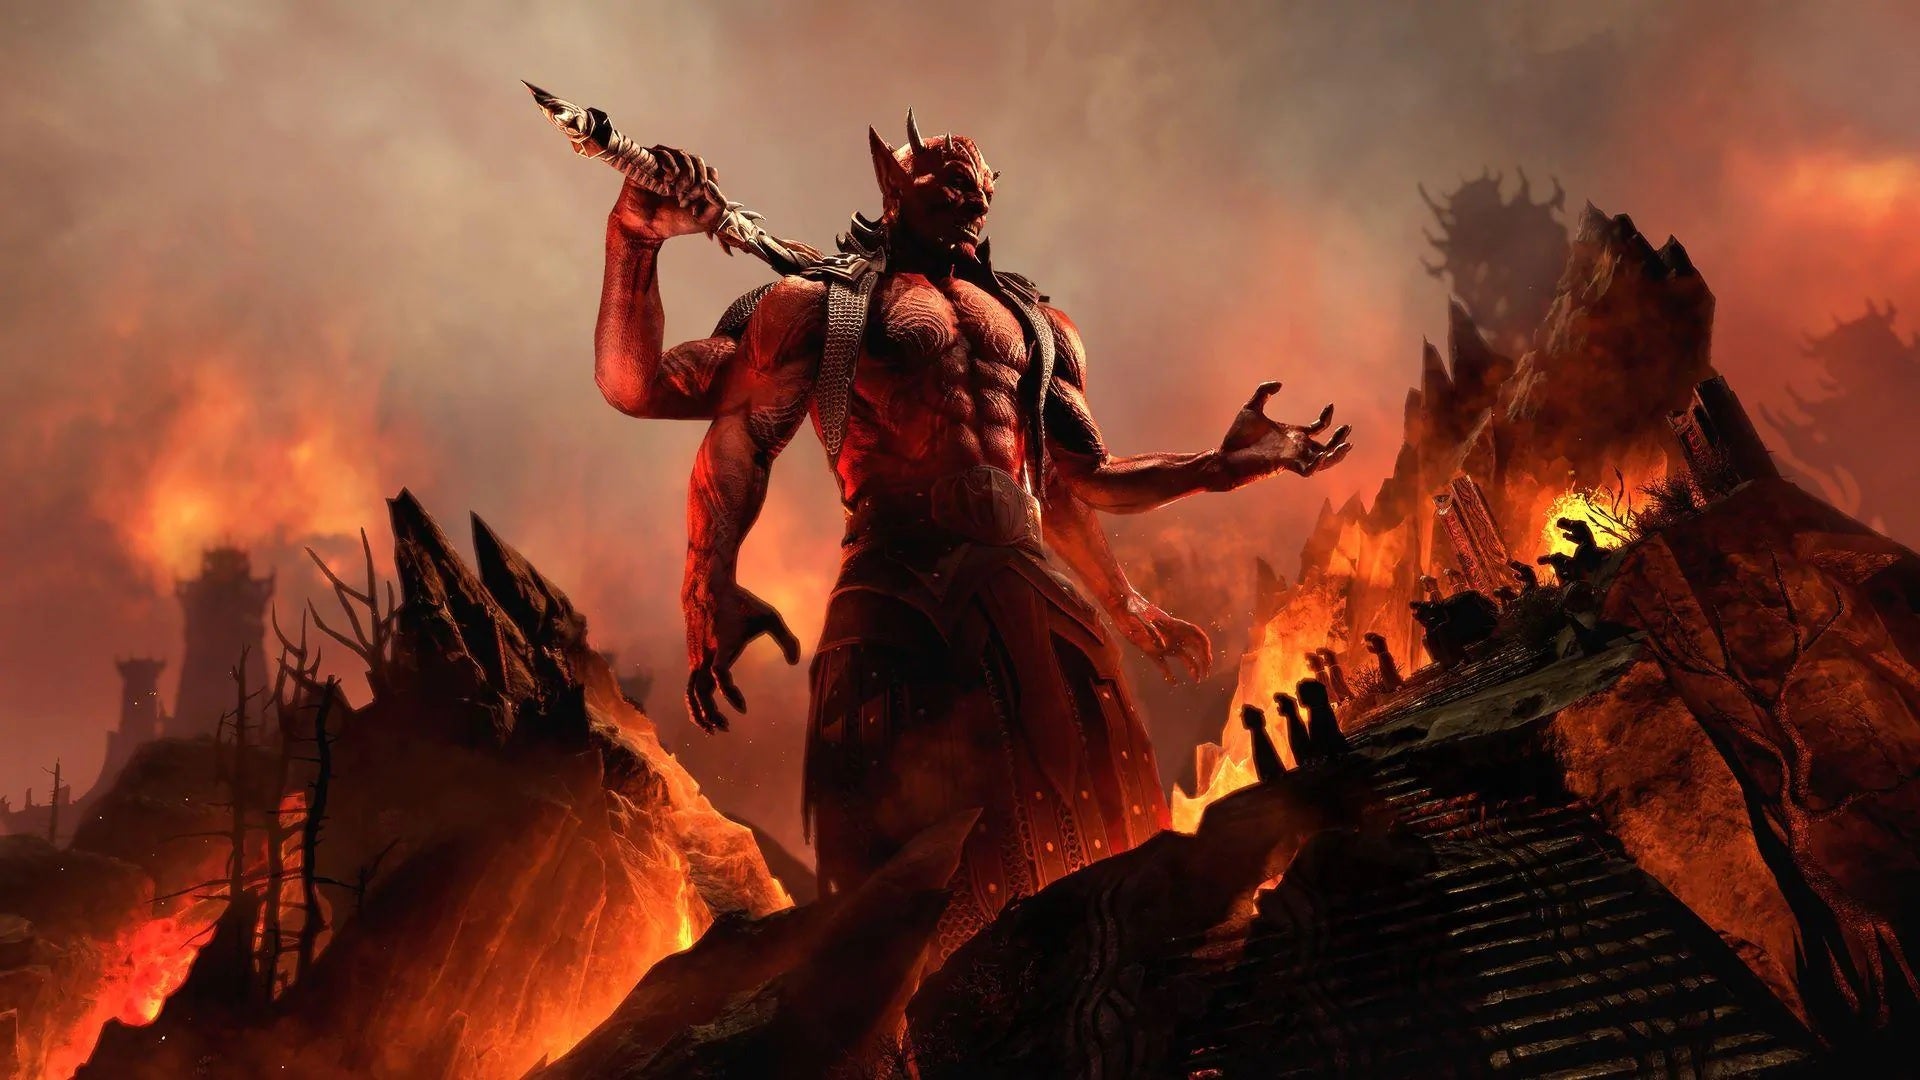 Image for Elder Scrolls Online's Oblivion gate expansion arrives in June